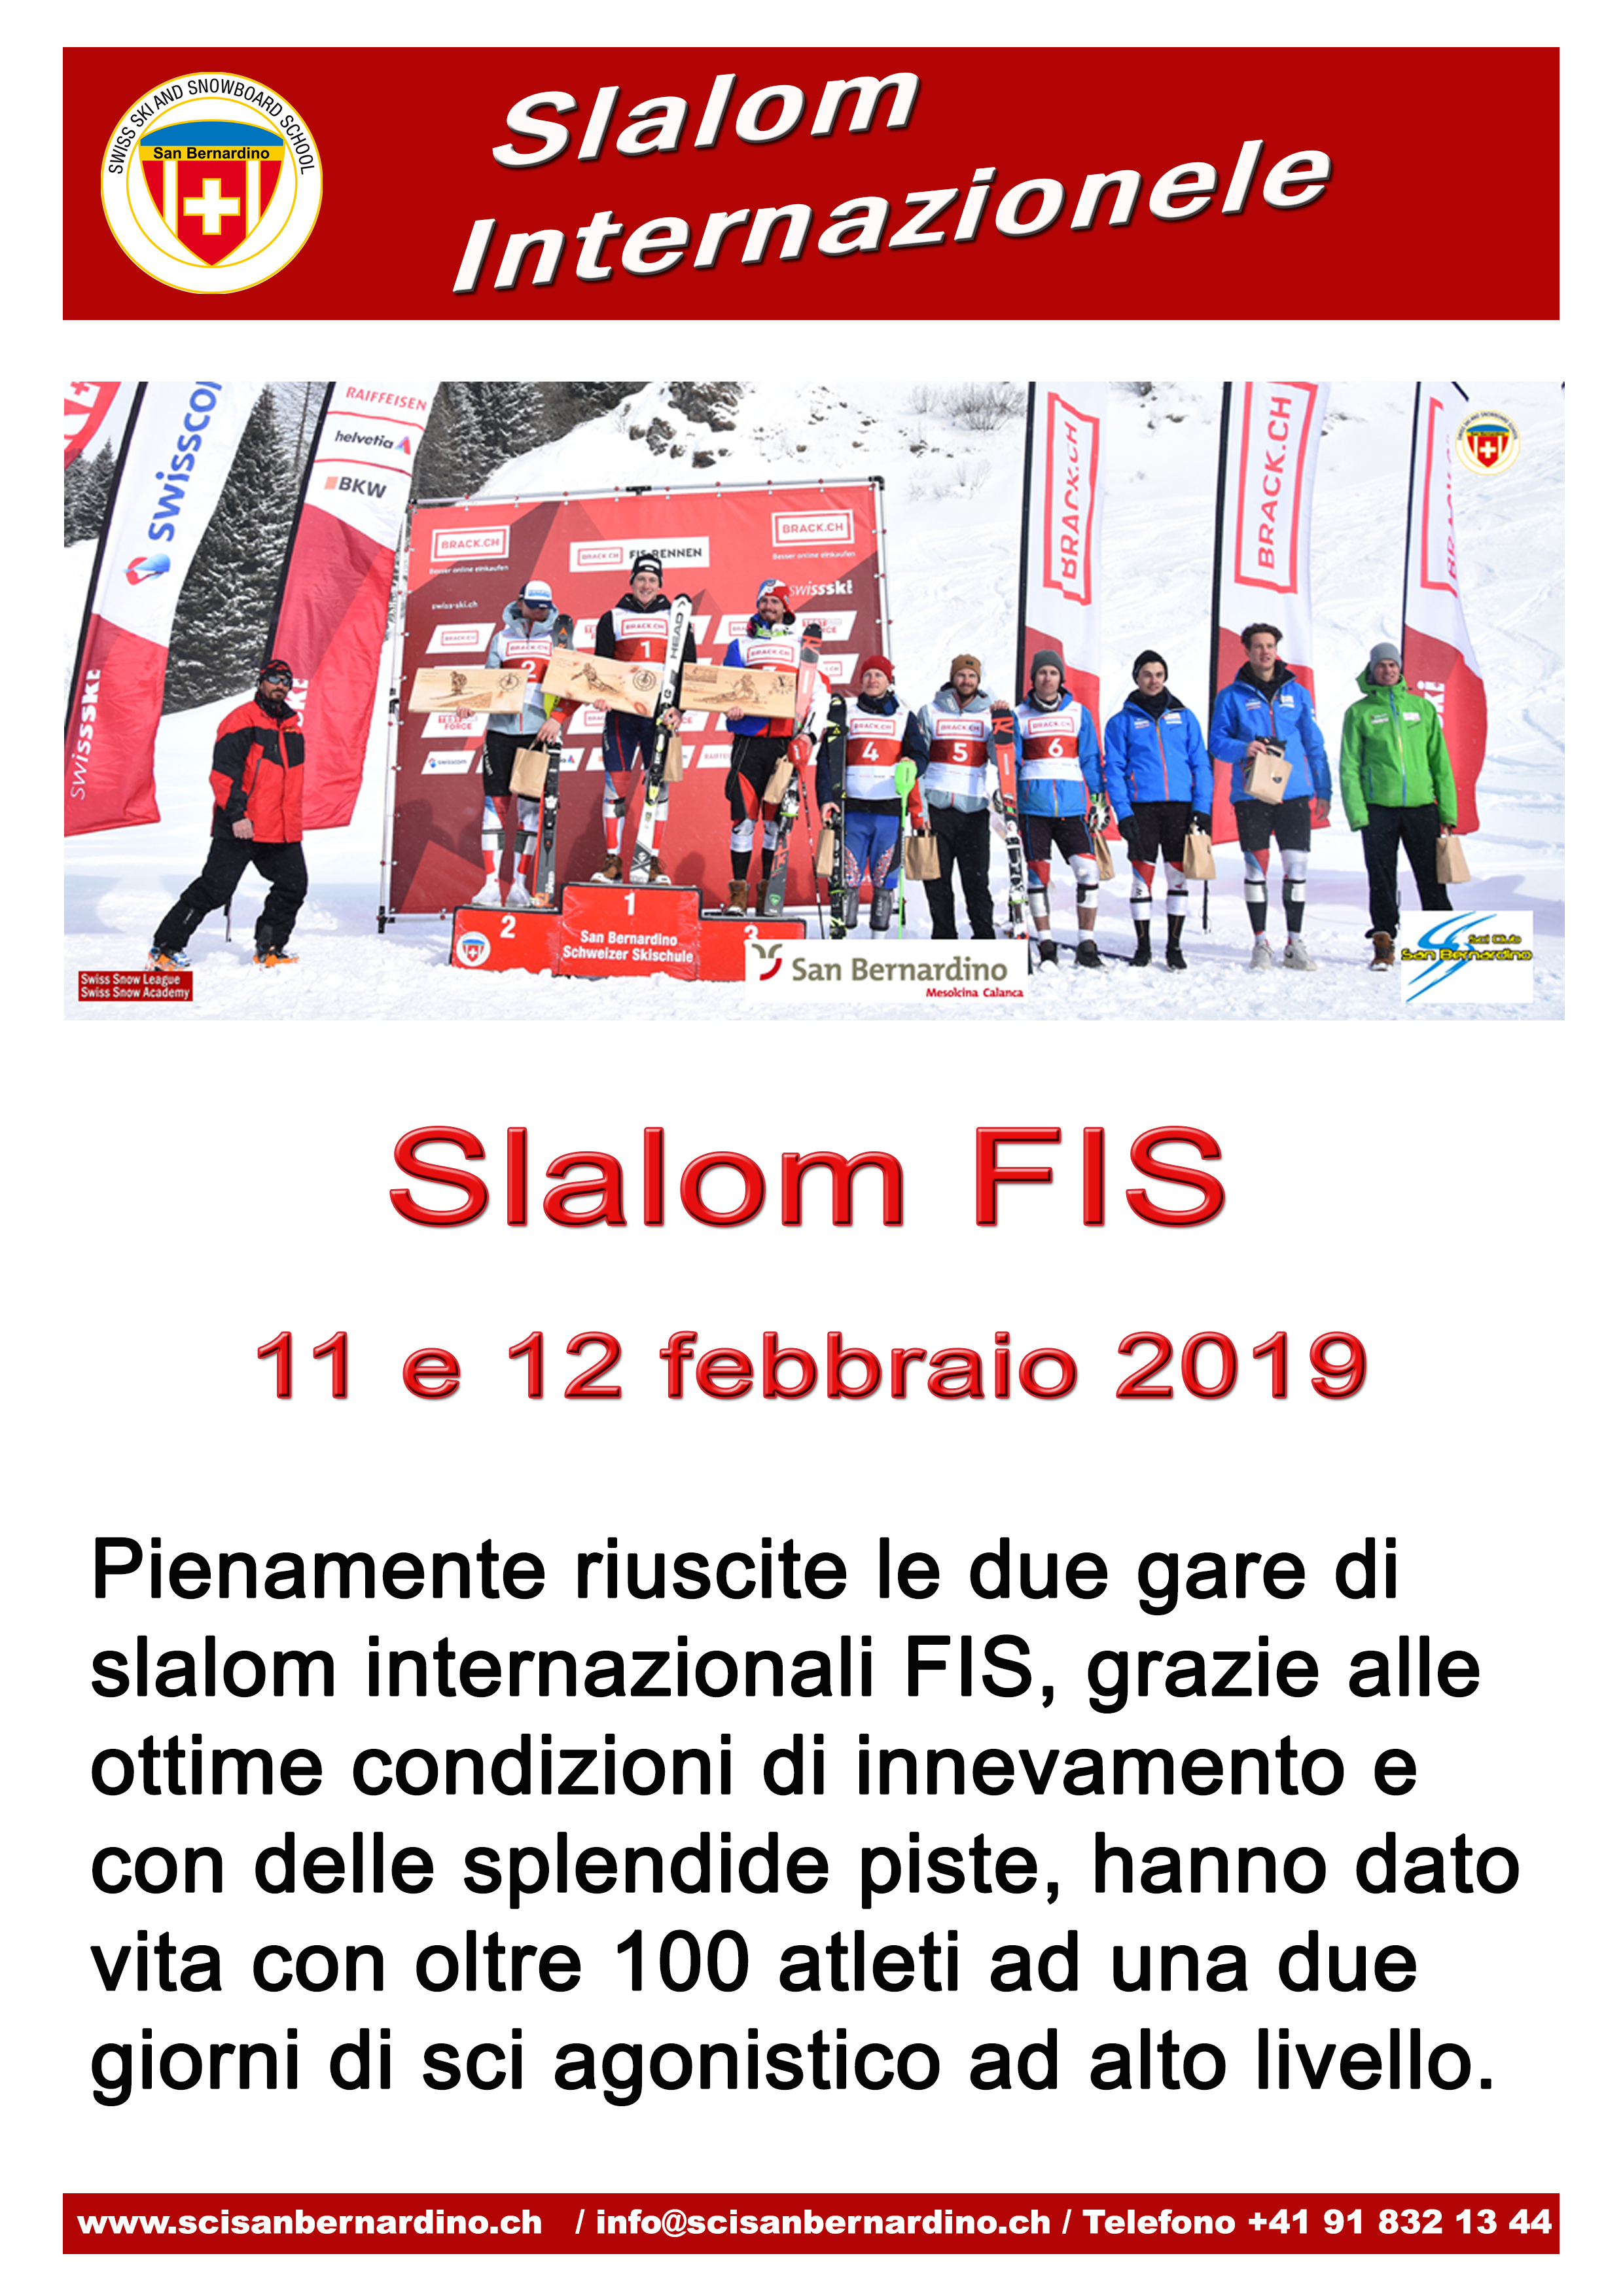 Slalom Internazionale FIS